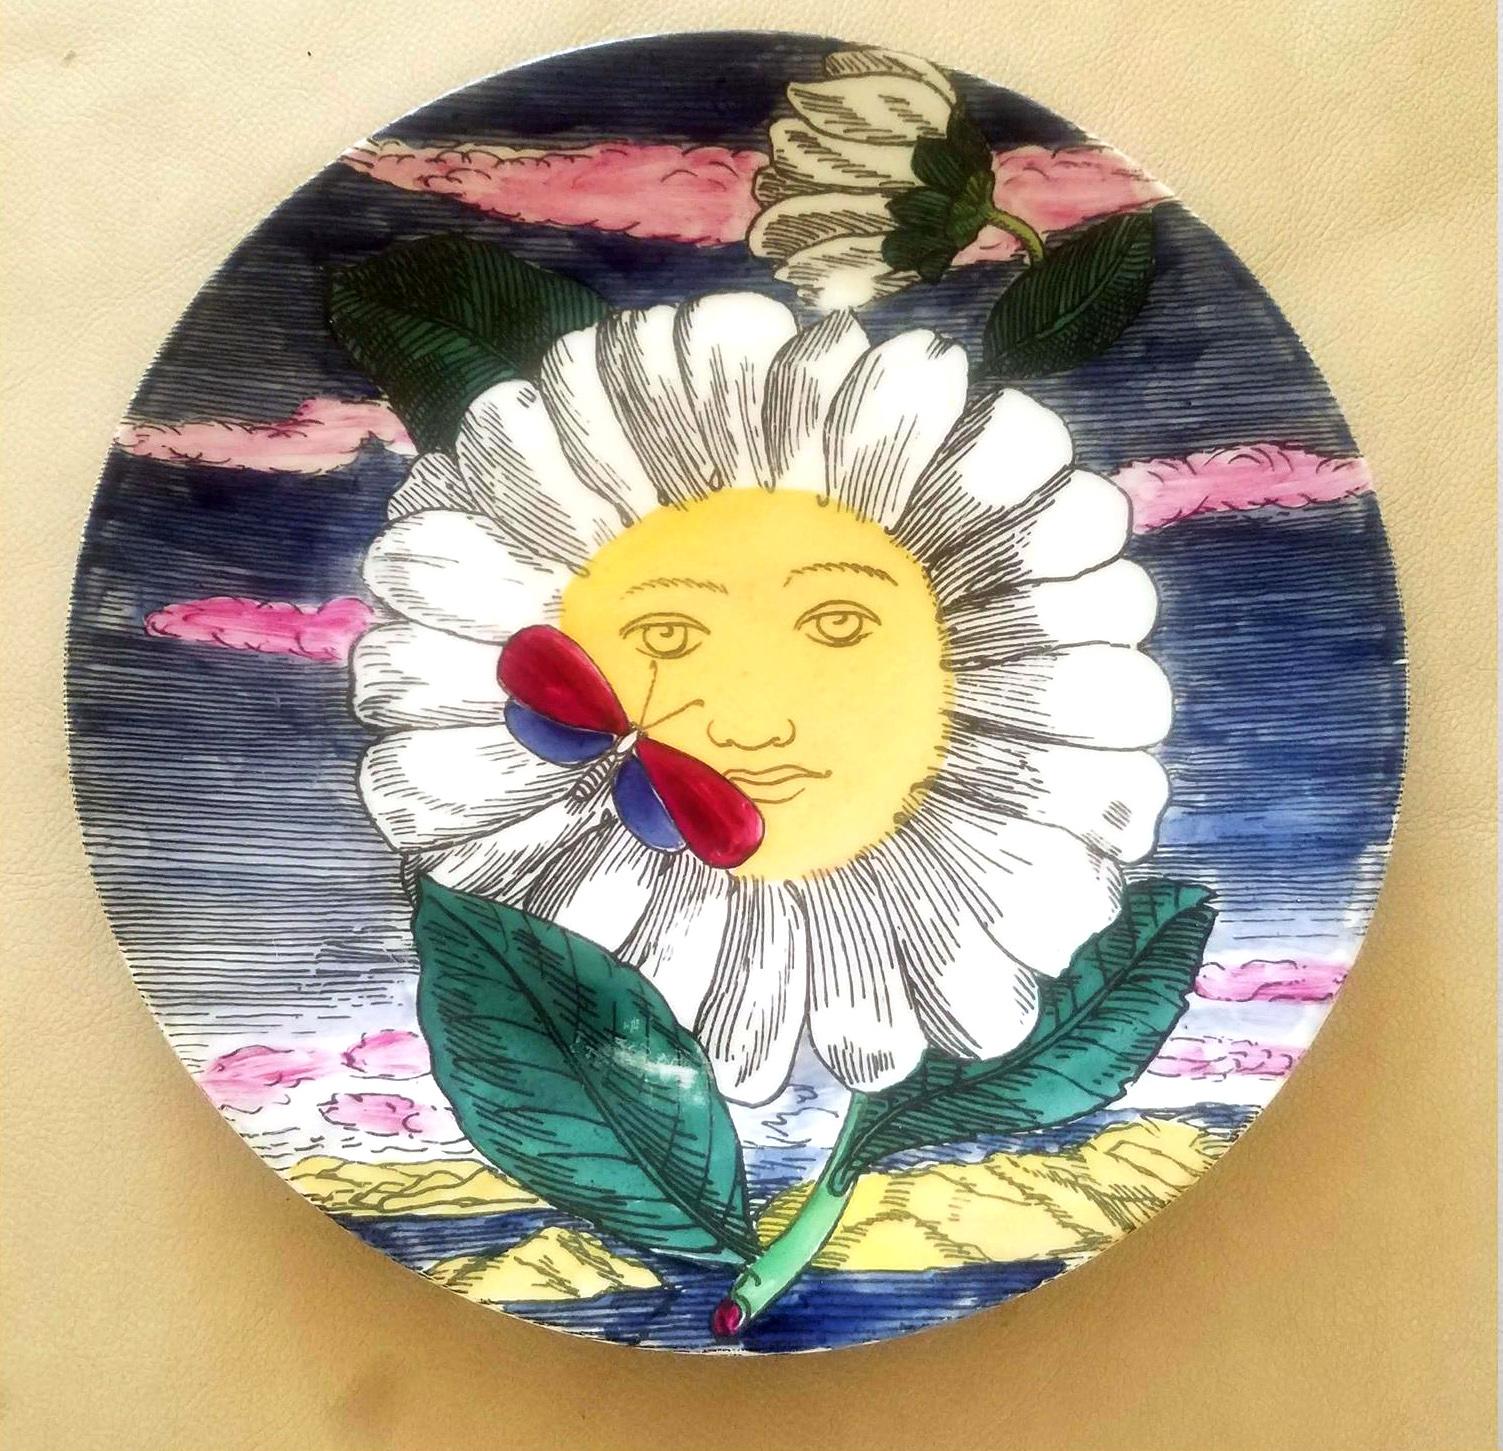 Assiettes mesi et soli en porcelaine de Piero Fornasetti,
12 soleils, 12 mois,
Paire d'assiettes
Milieu-fin des années 1950.

Piero Fornasetti 